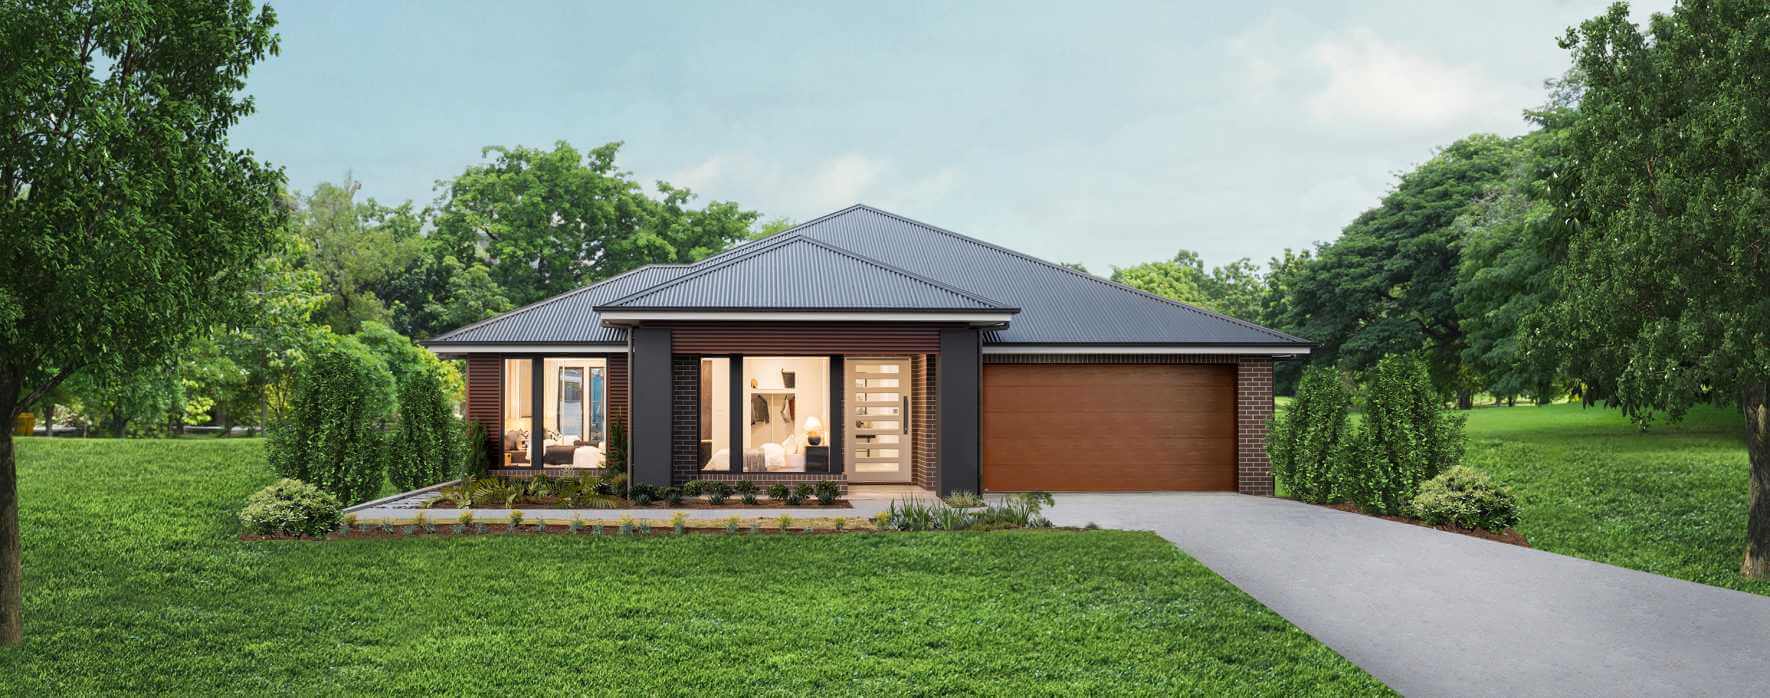 oasis-37-single-storey-house-design-natural-facade